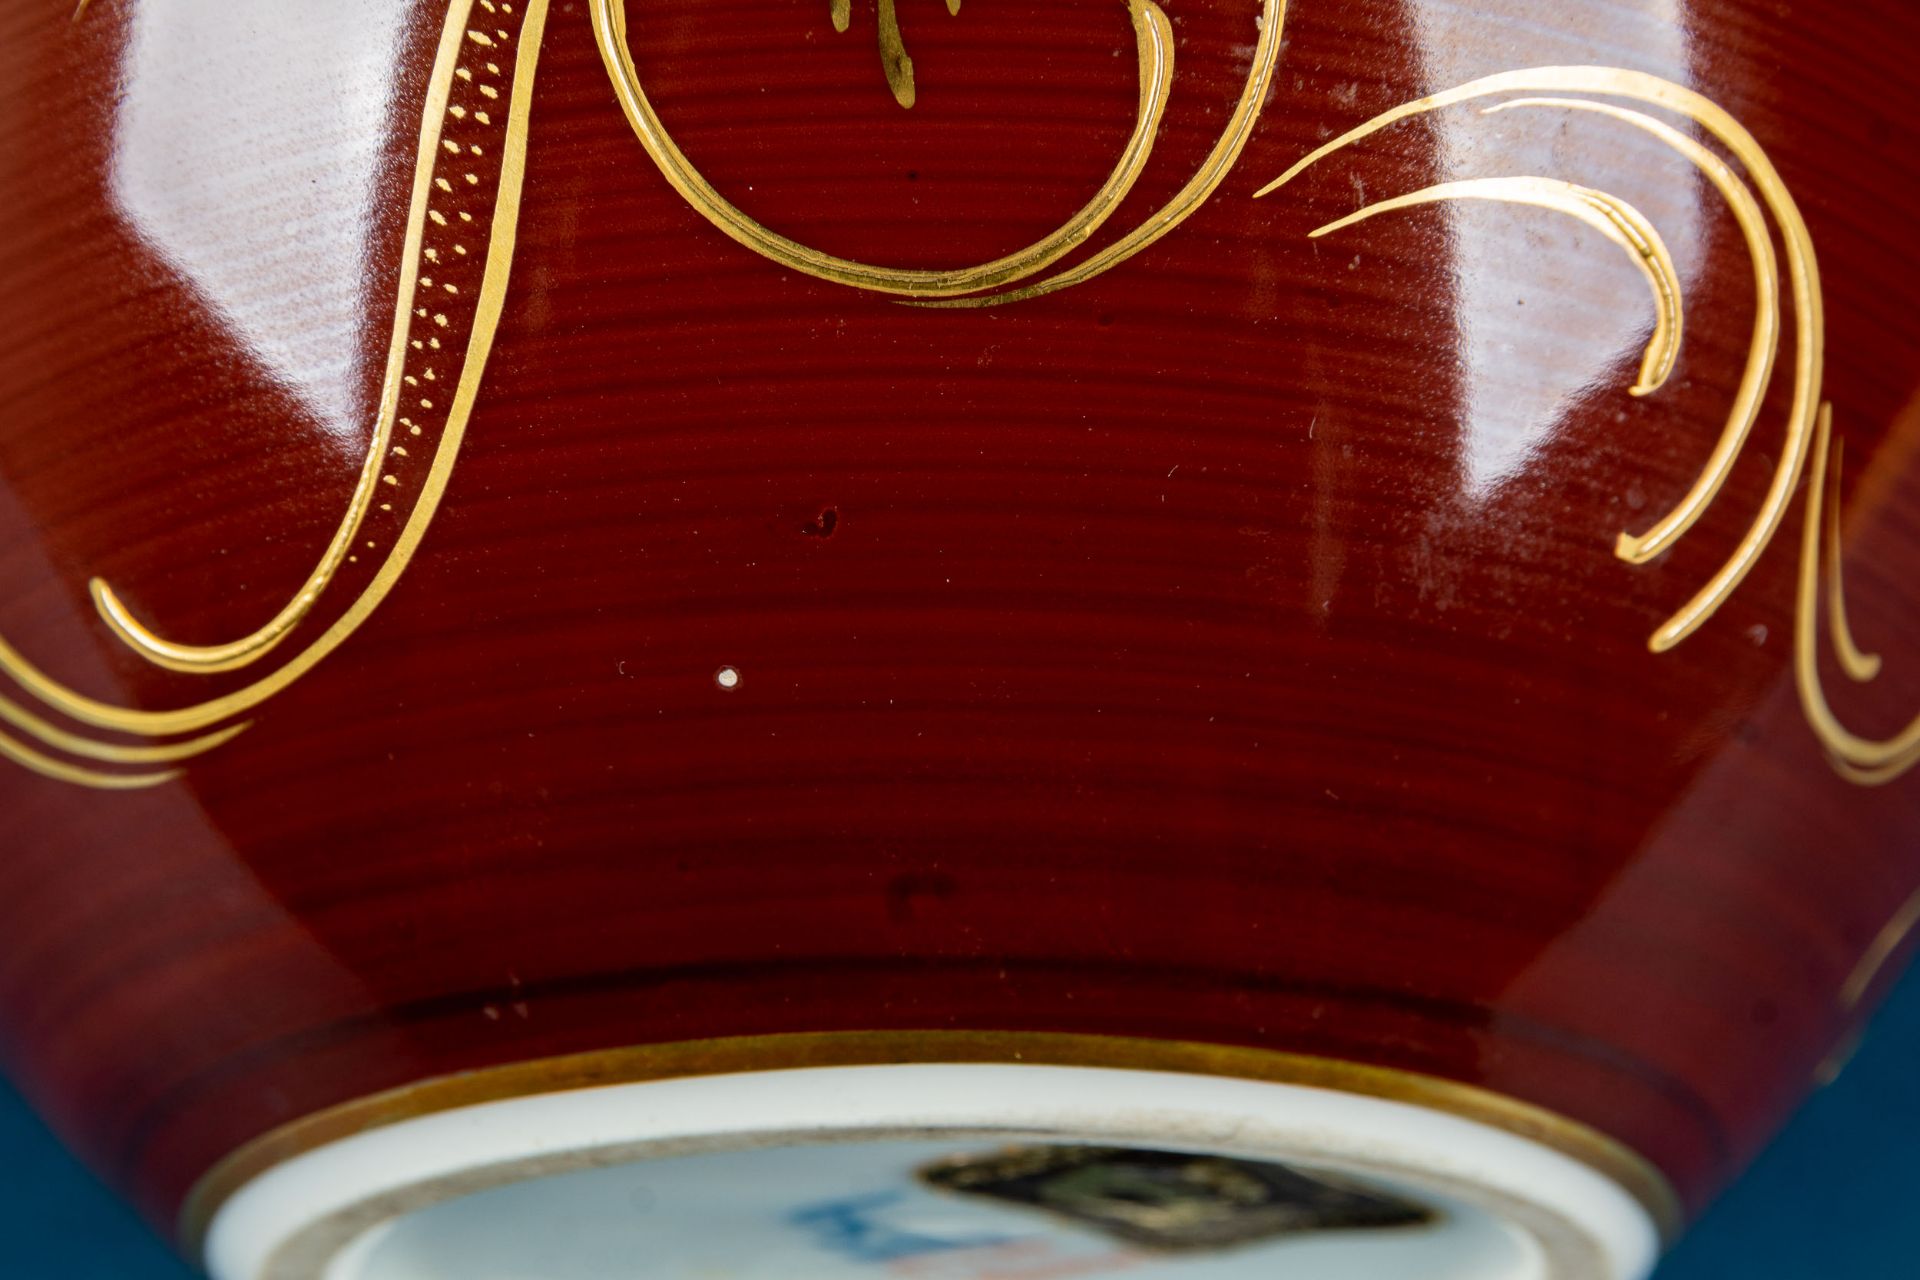 Bauchige Vase, Fürstenberg, Weißporzellan mit rotbräunlichem Fond und verspielten Golddekoren in ba - Image 7 of 8